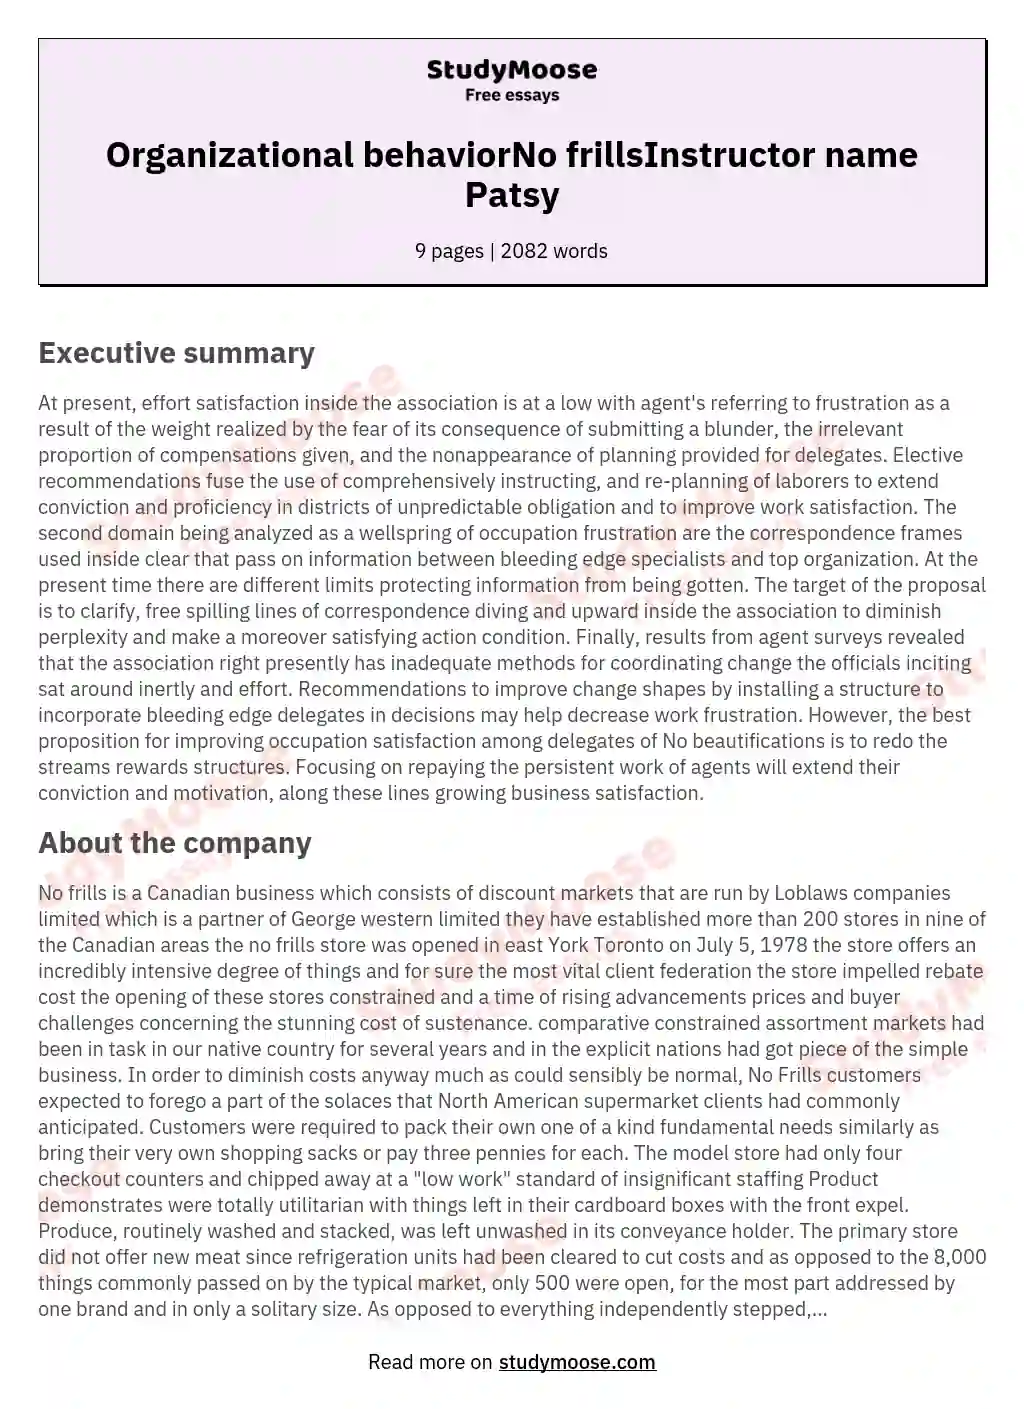 Organizational behaviorNo frillsInstructor name Patsy essay